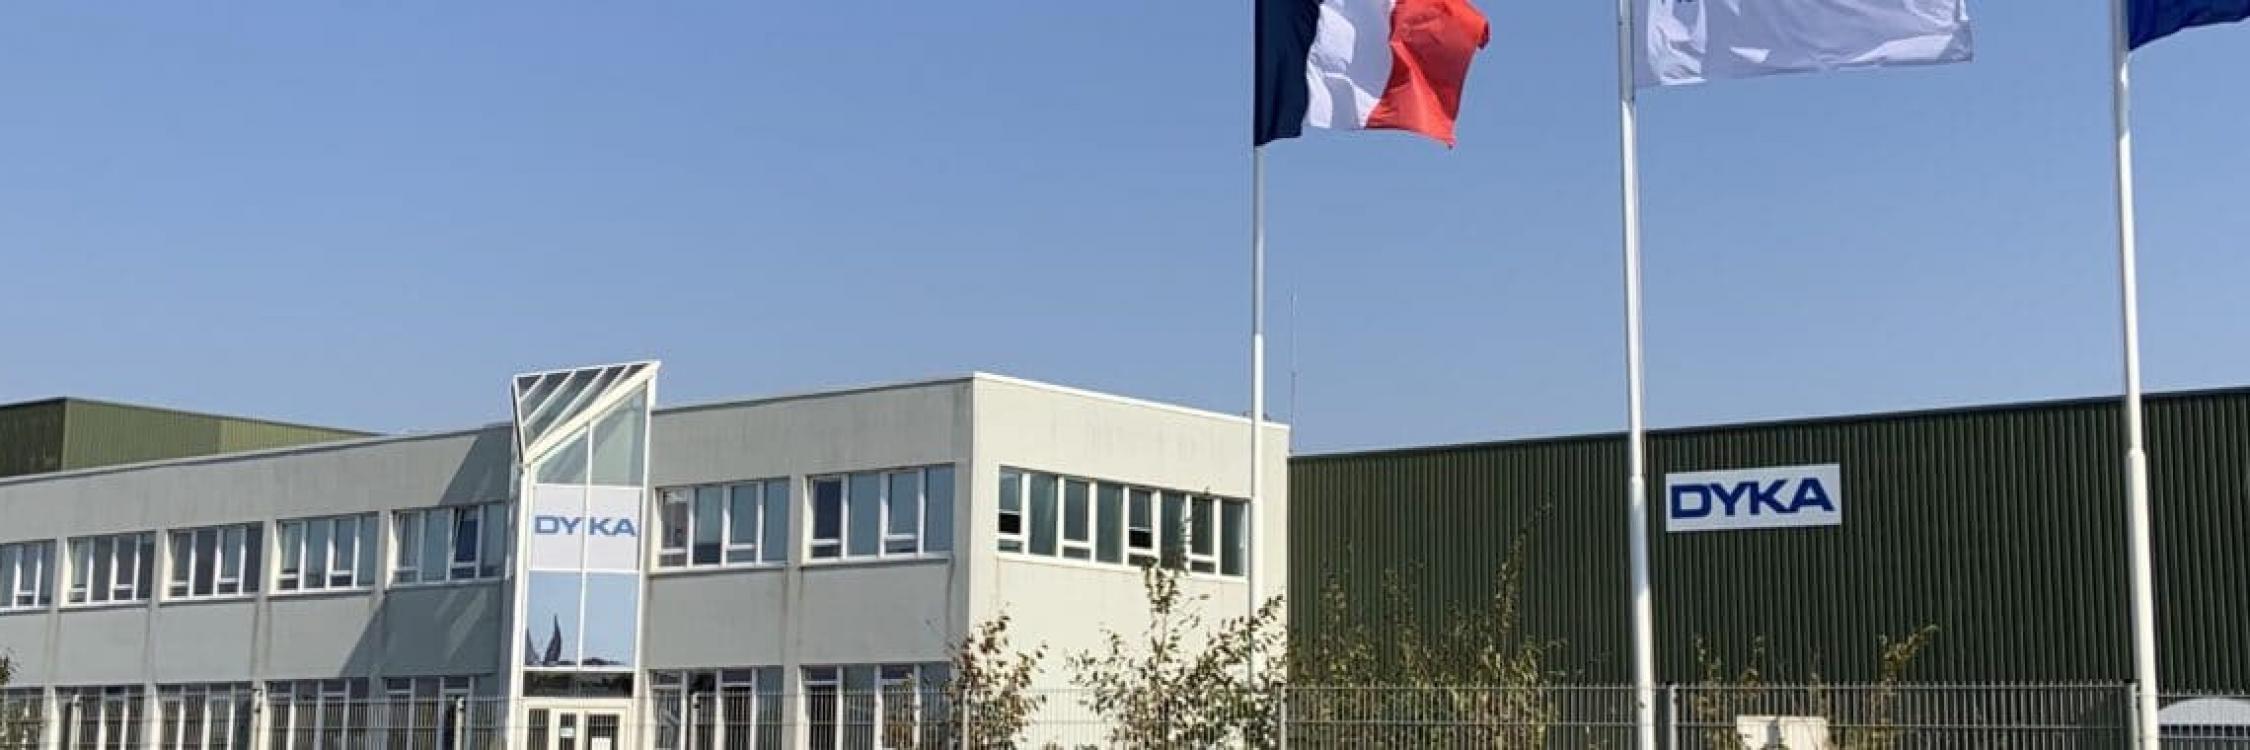 Usine de production de thermoplastiques de DYKA à Bourges France